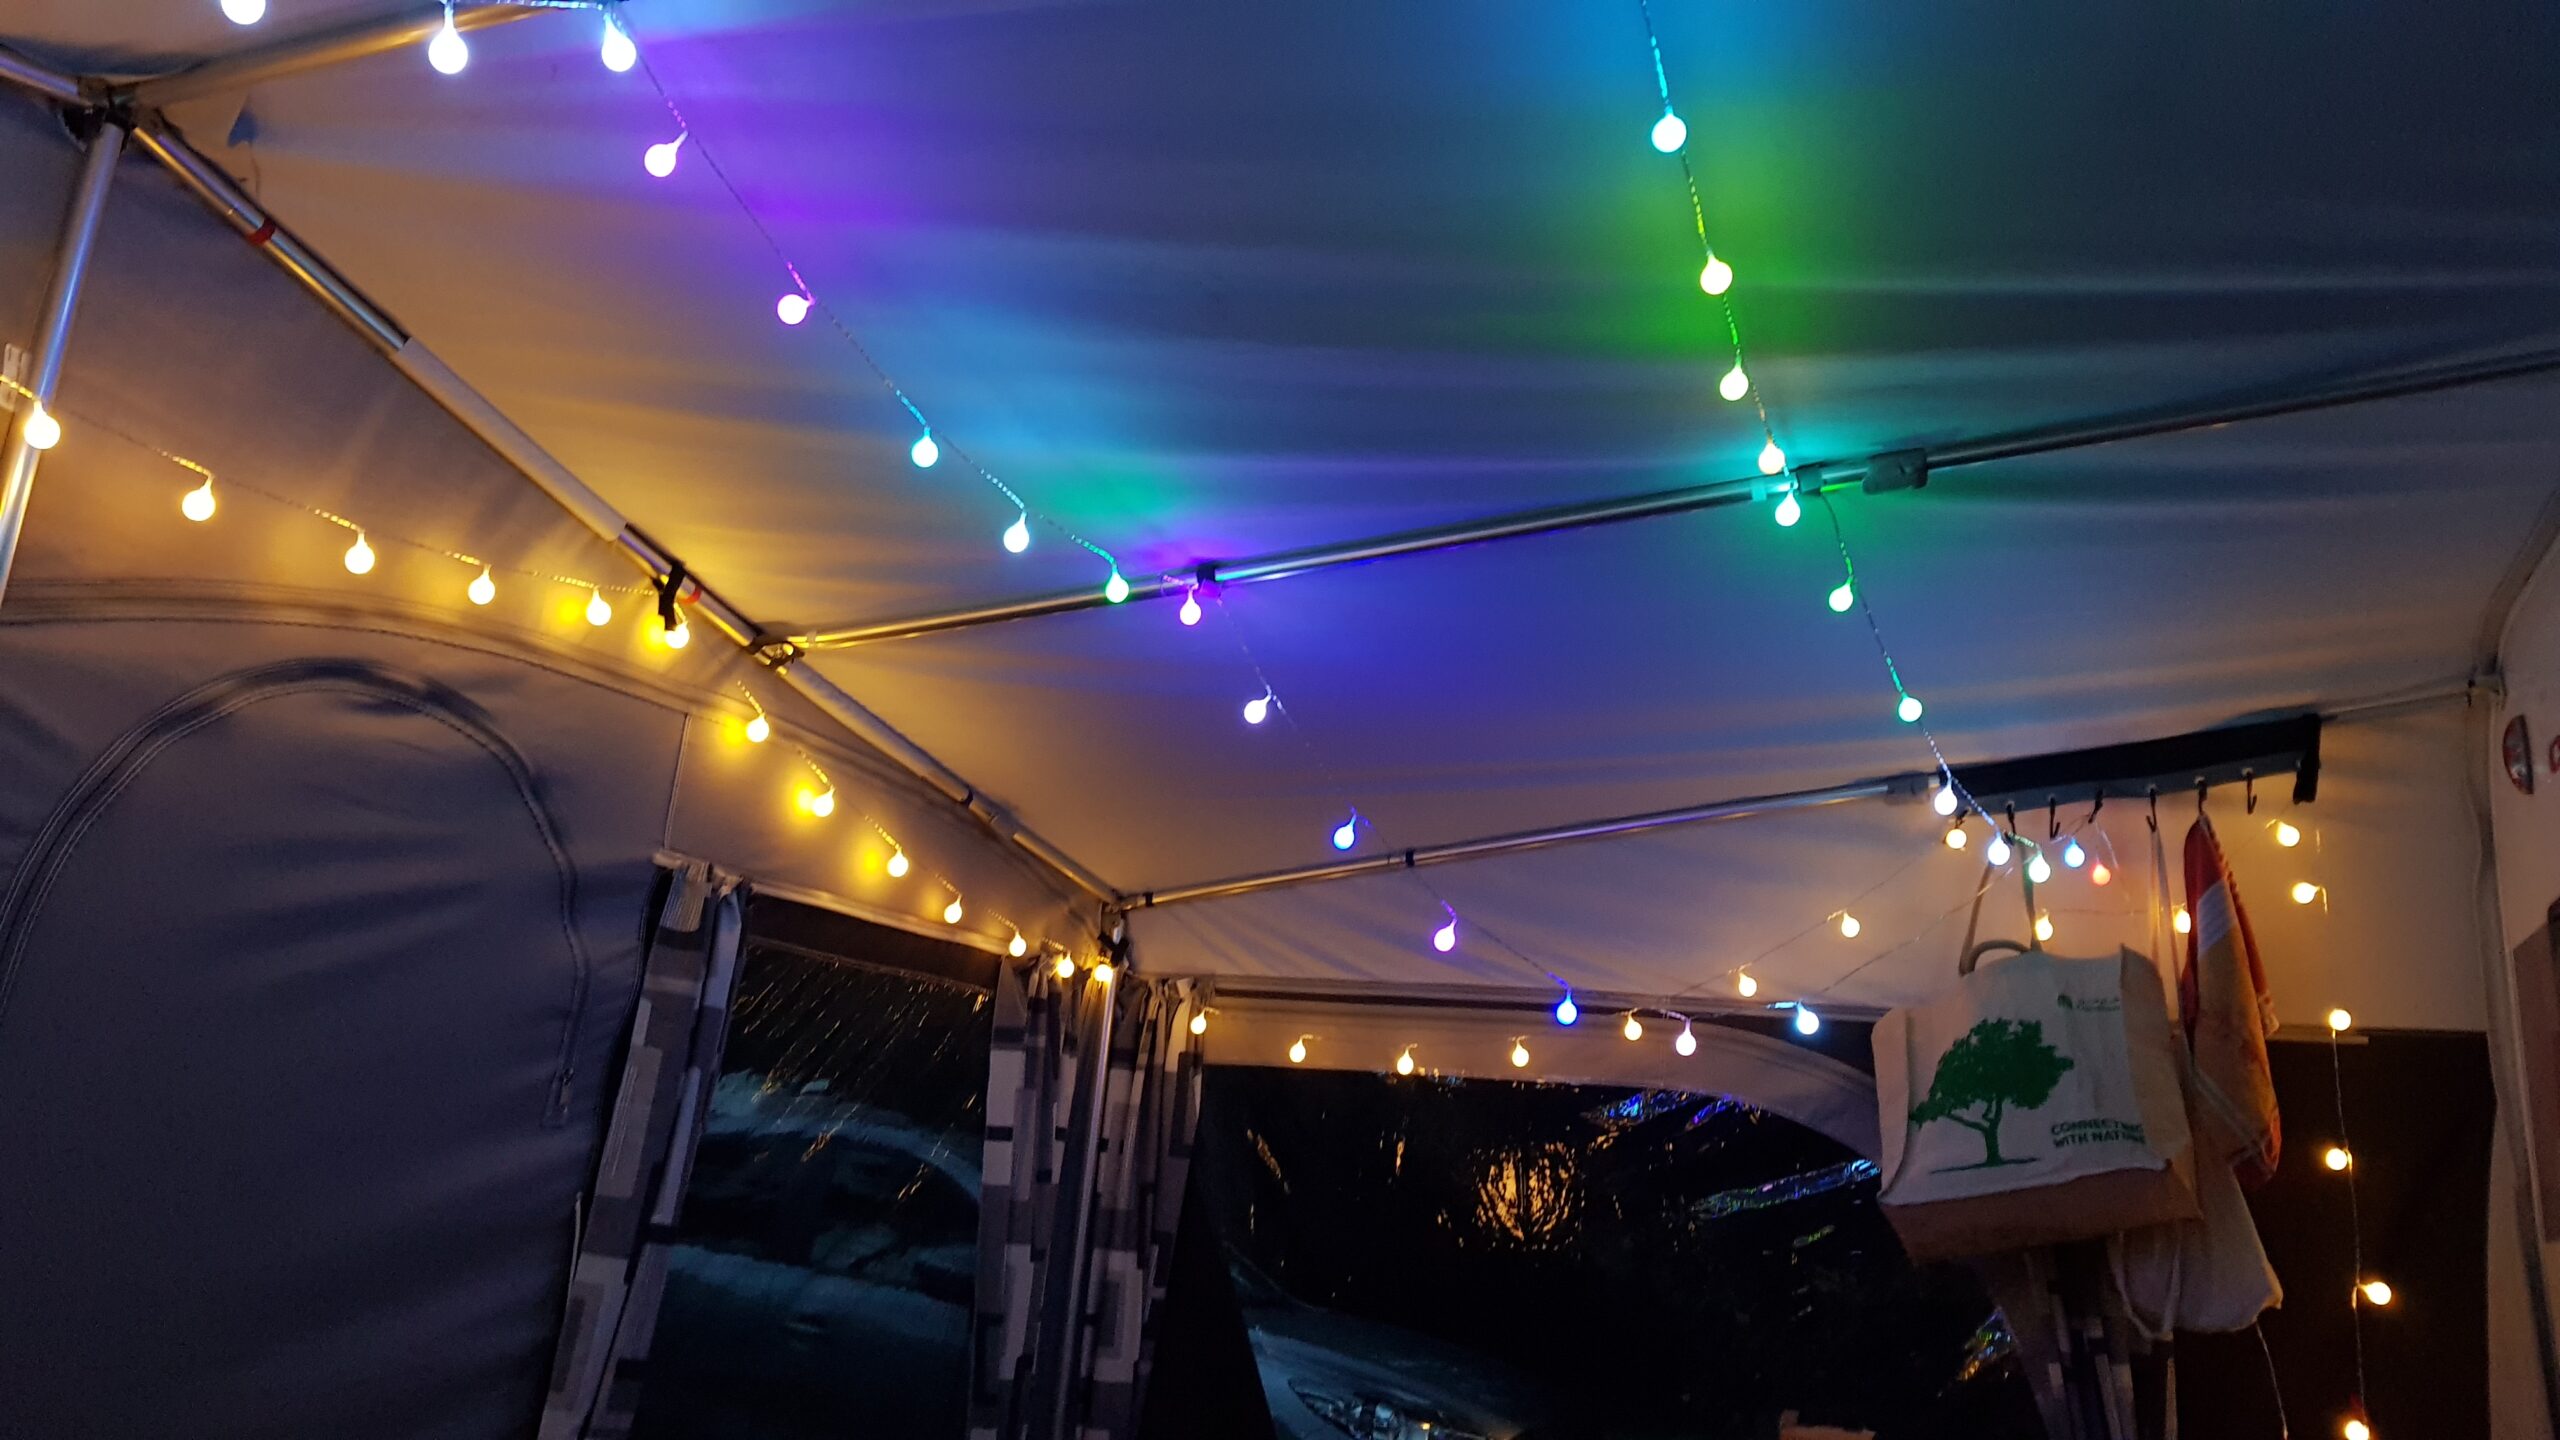 goedkope kampeerverlichting, verlichting voortent camping